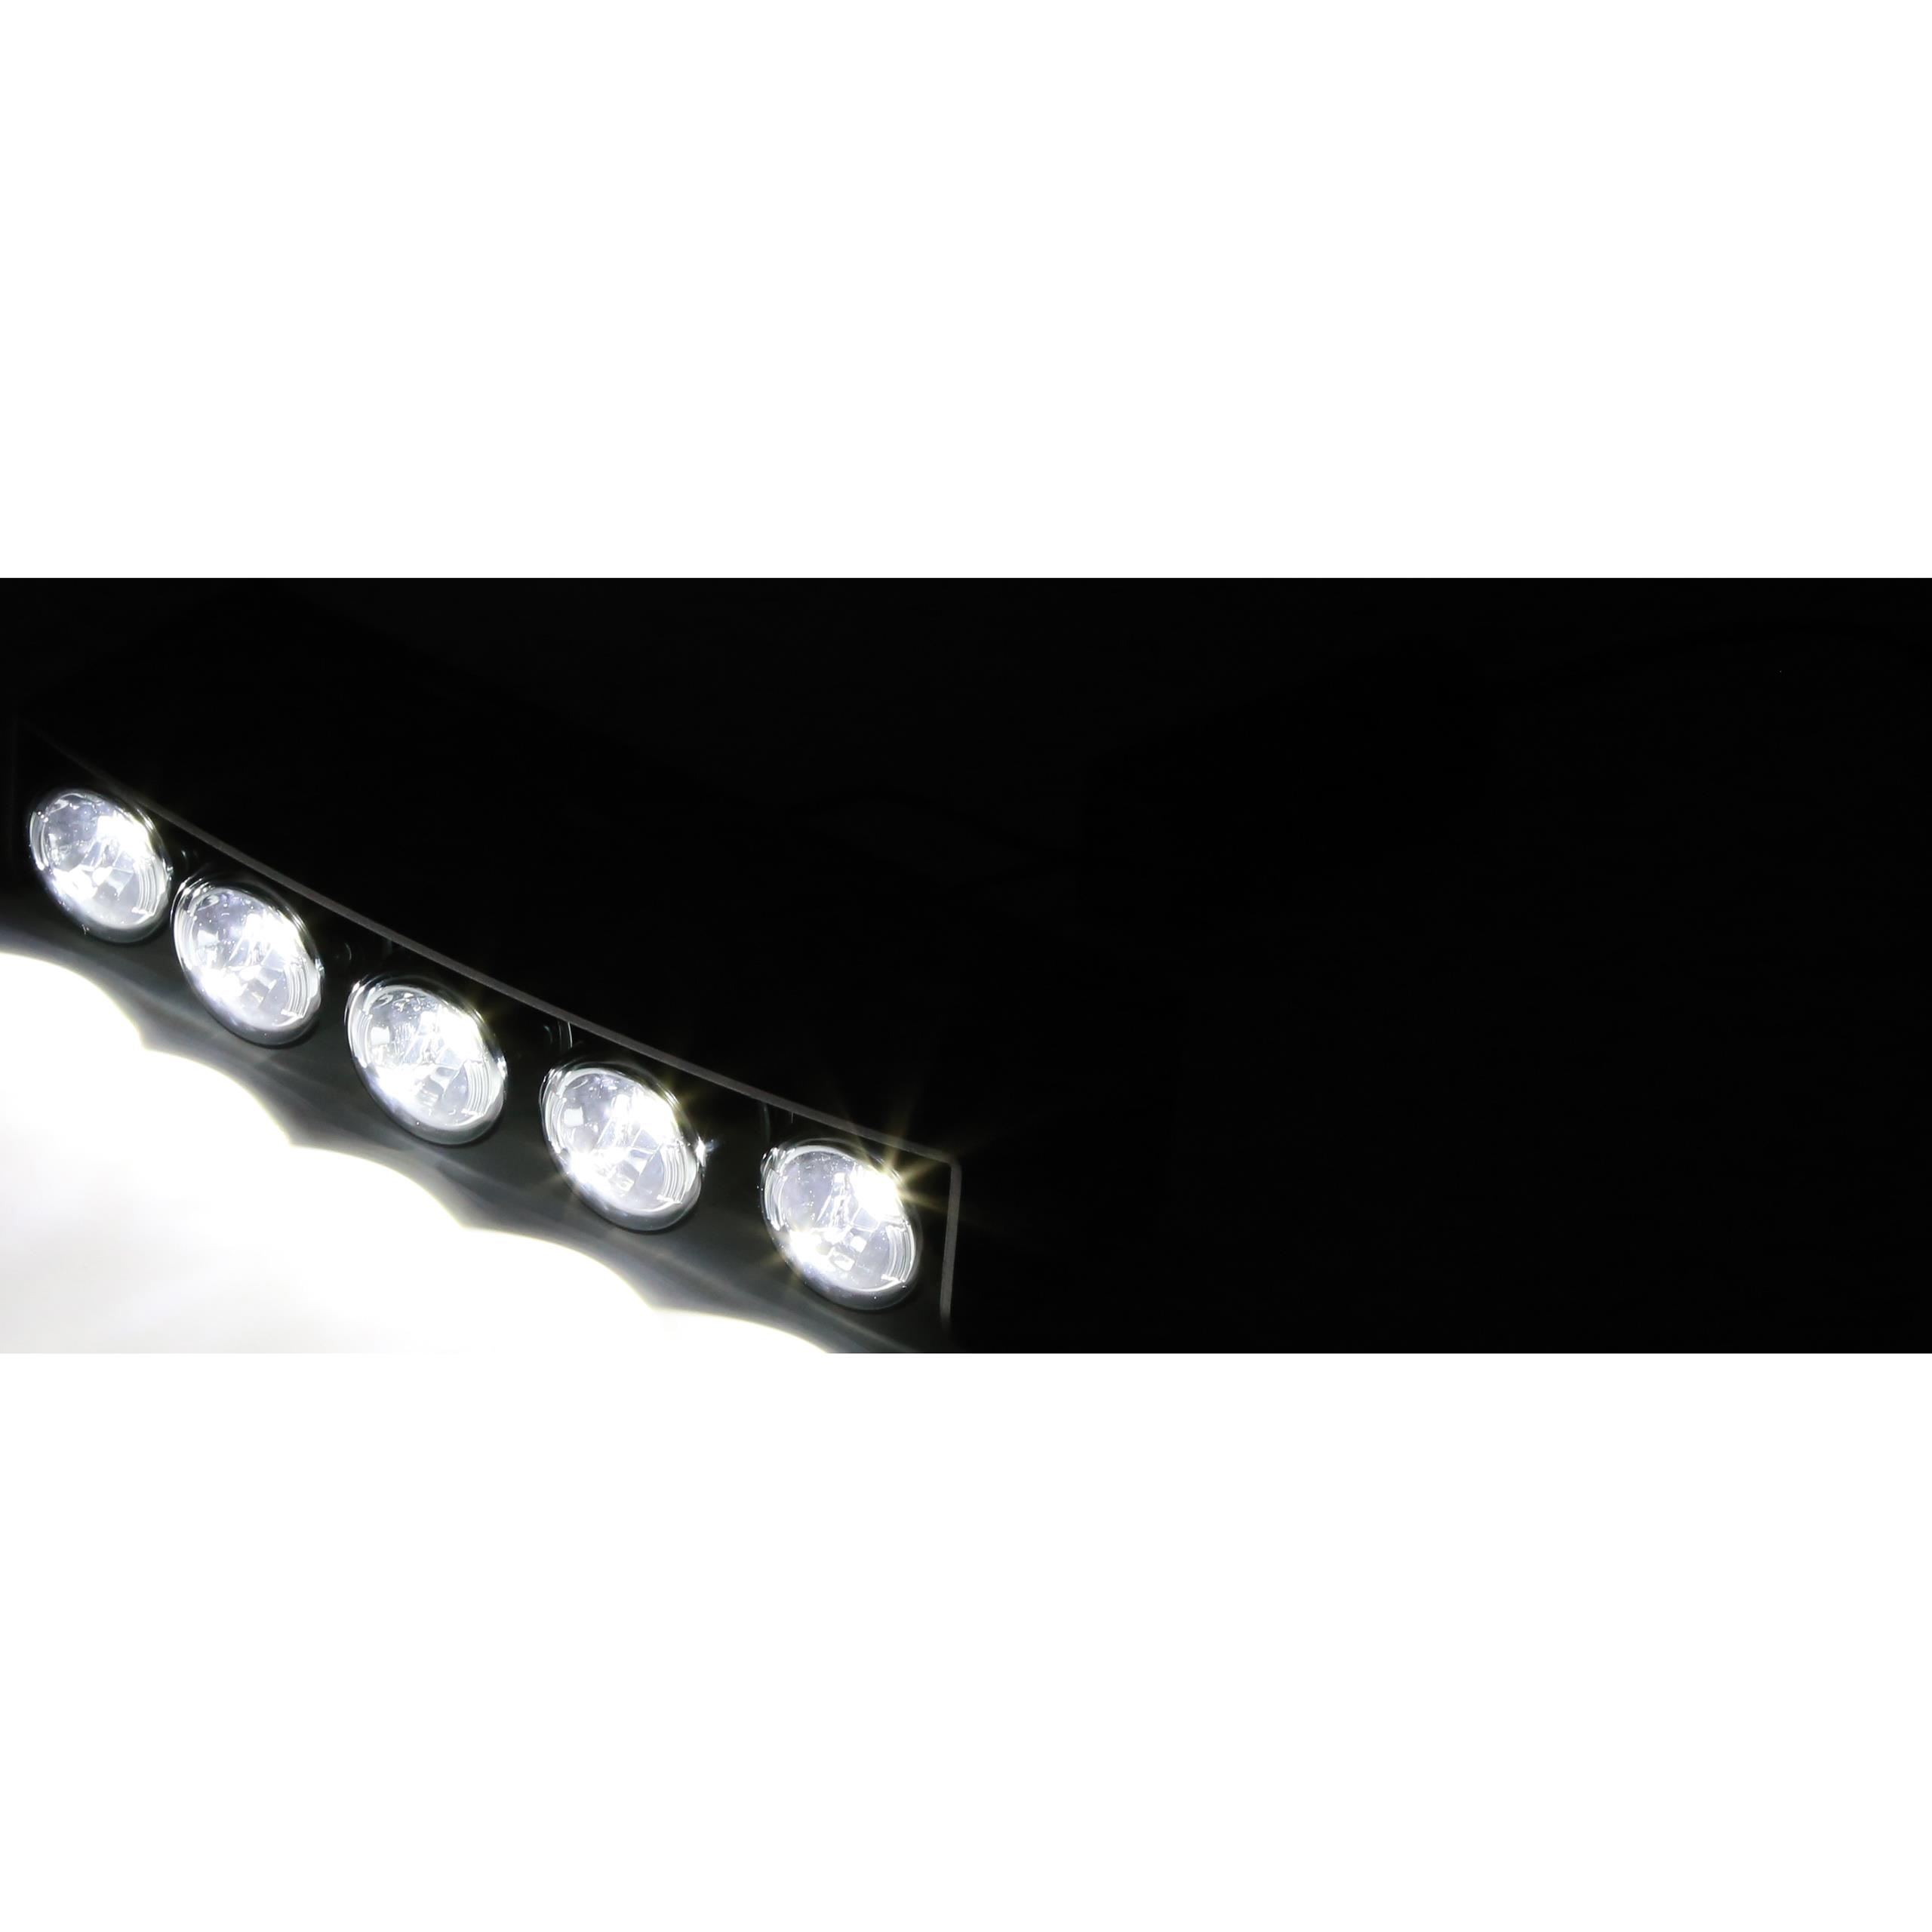 Highsider LED-Tagfahrlicht/Standlicht universal Alu rechteckig